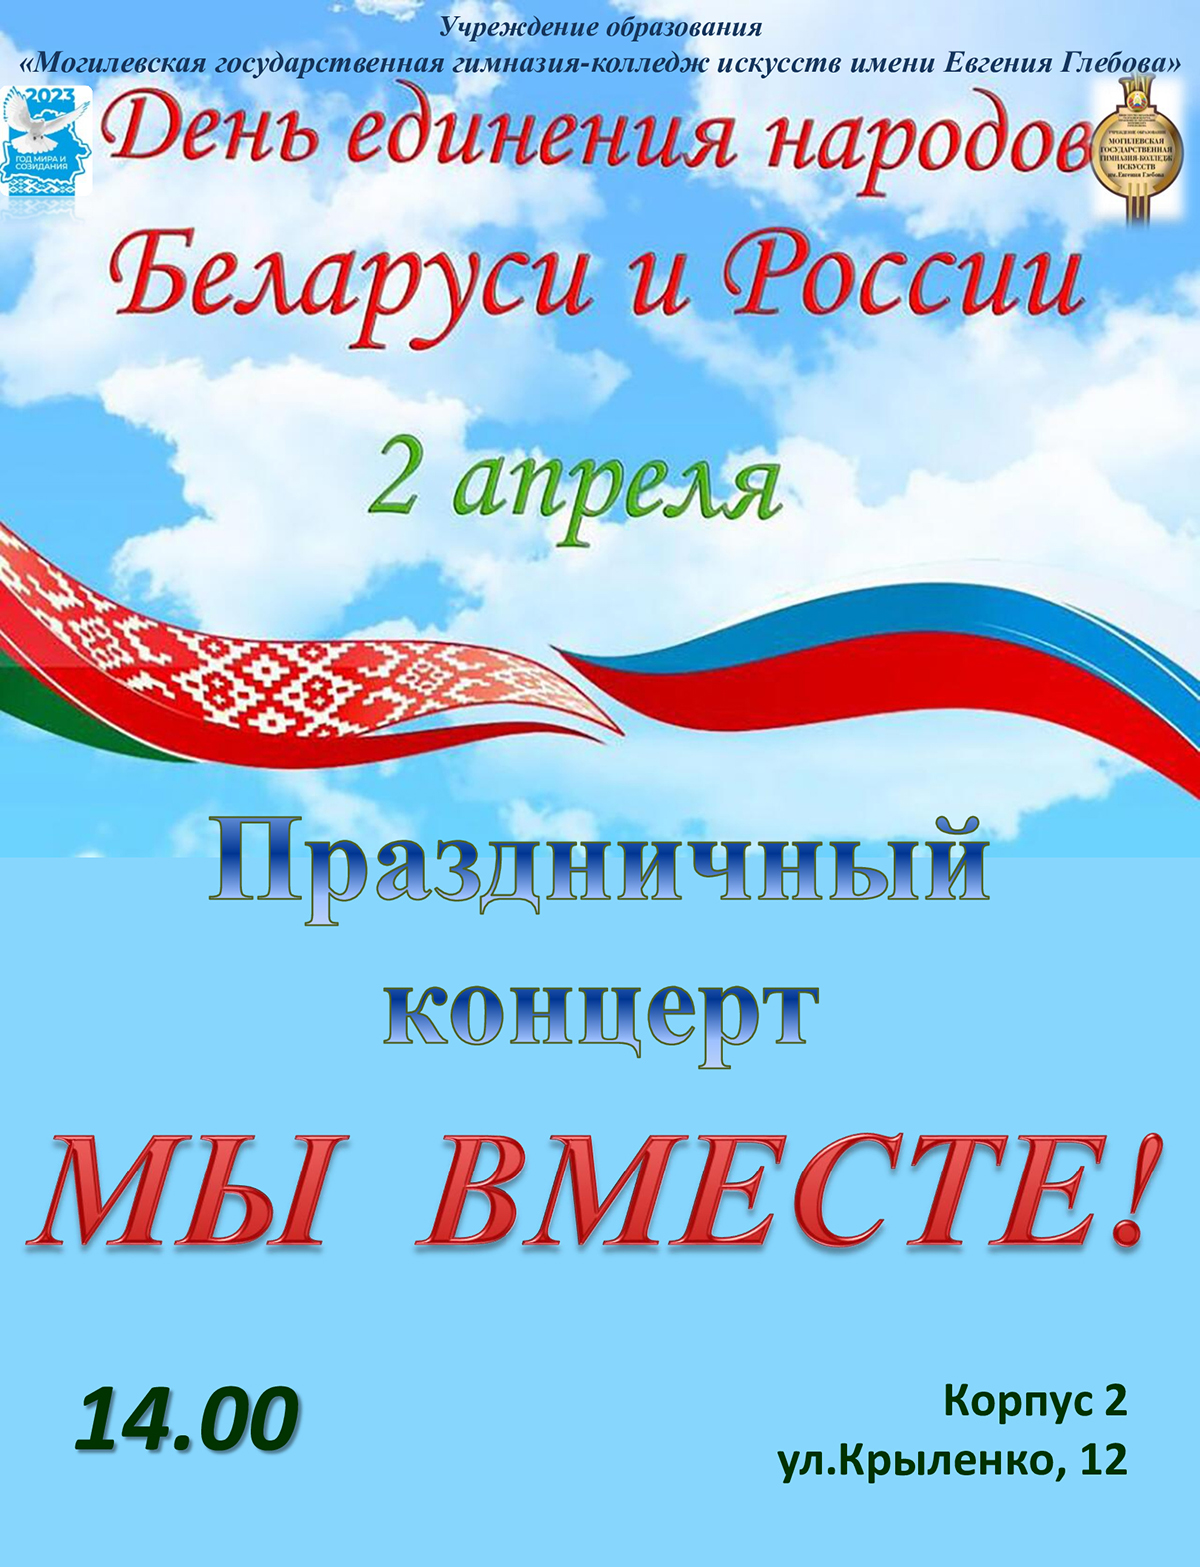 С Днем единения народов Беларуси и России!